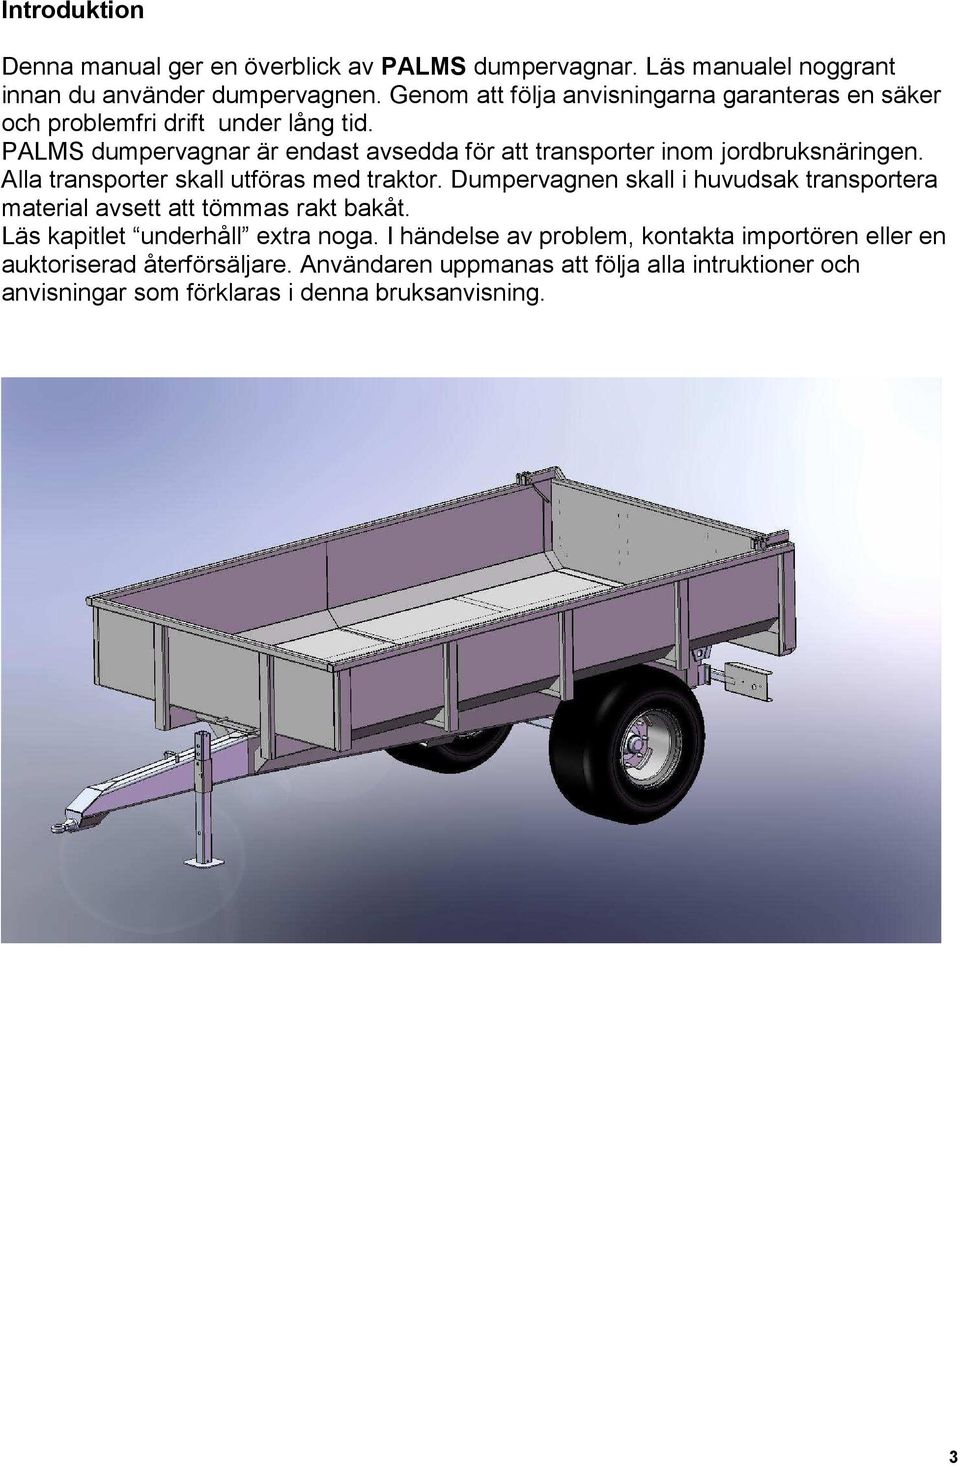 PALMS dumpervagnar är endast avsedda för att transporter inom jordbruksnäringen. Alla transporter skall utföras med traktor.